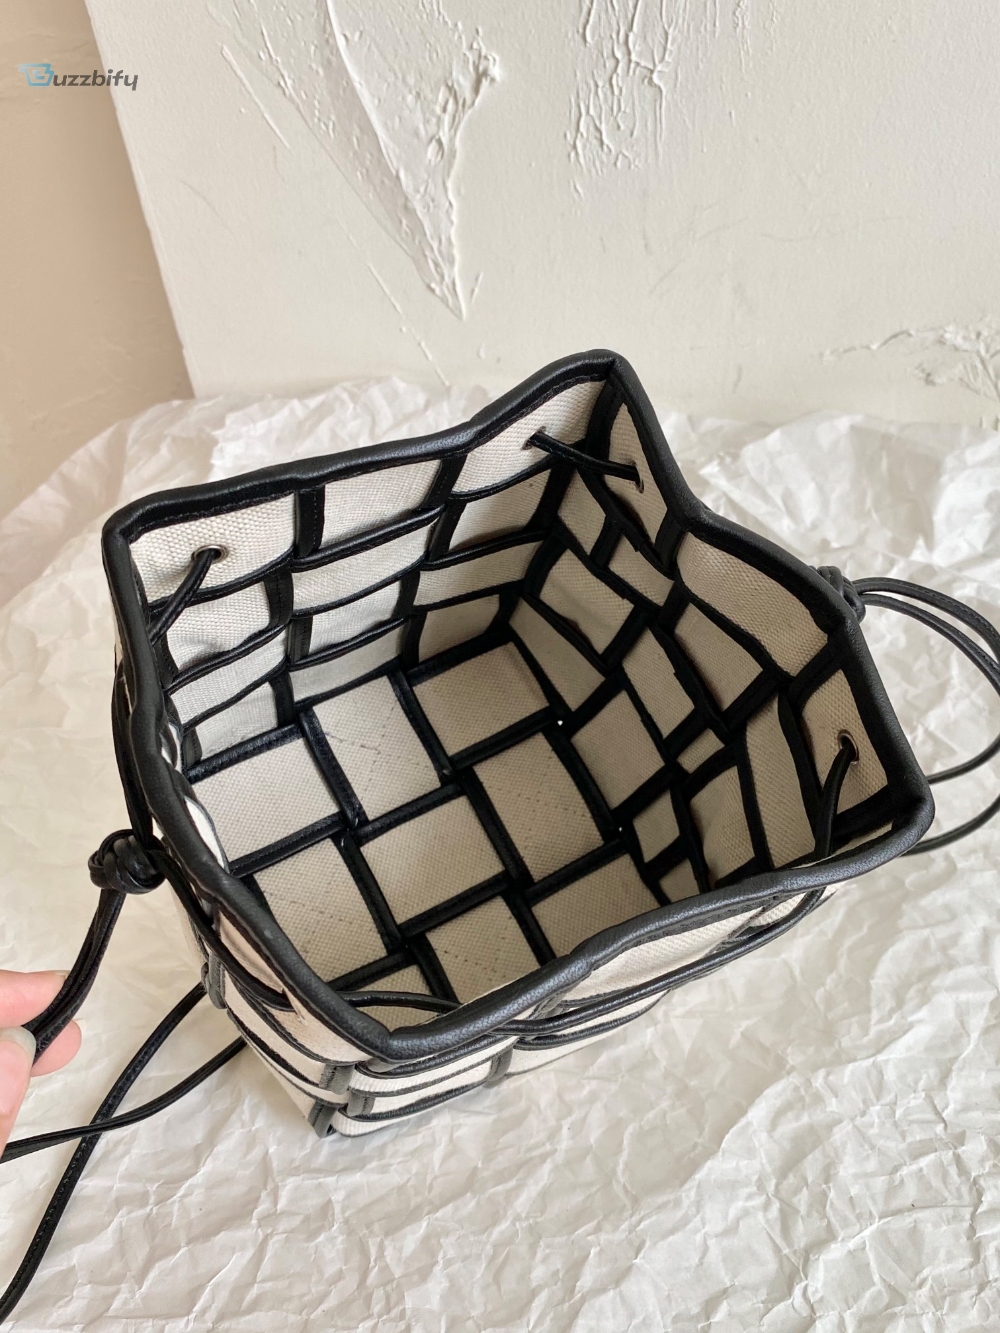 Bottega Veneta Cassette Bucket Bag Beige And Black, For Women, Women’s Bags 5.5in/18cm 714608VMBN39811 